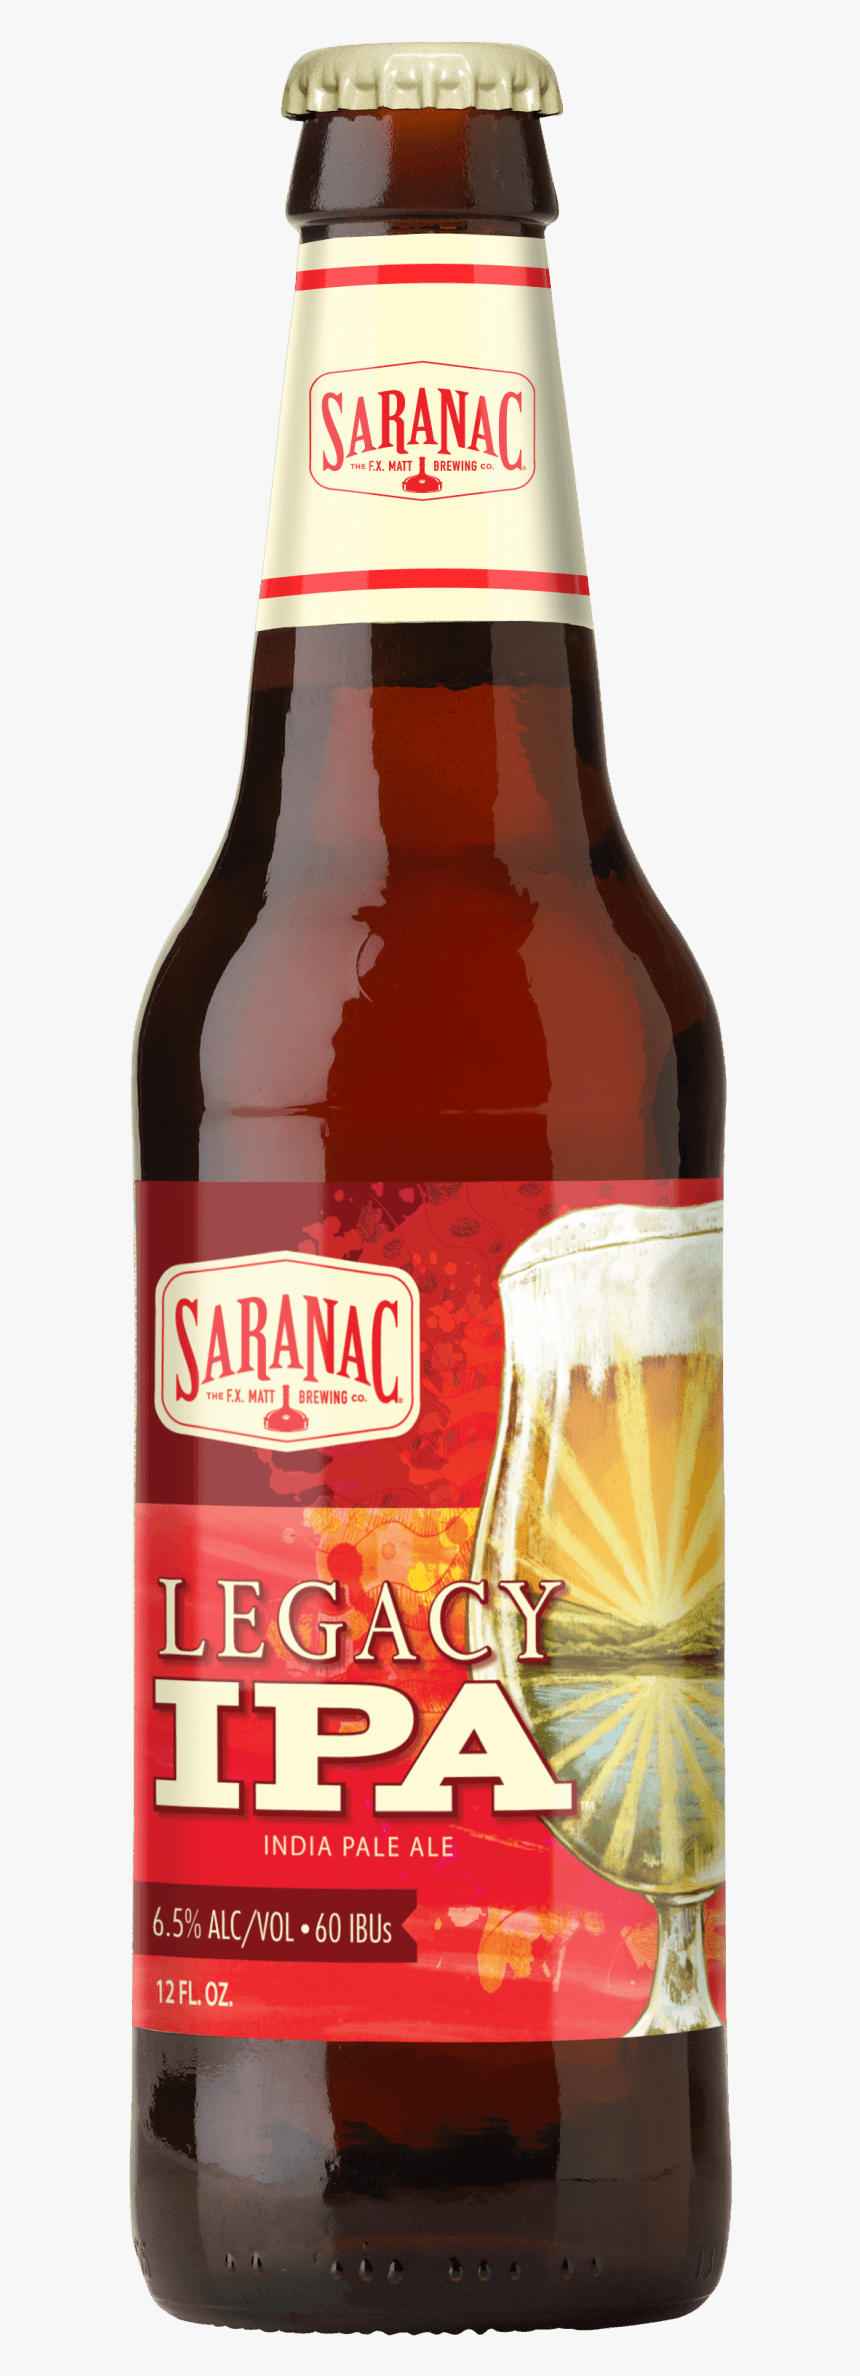 Saranac Legacy Ipa Bottle - Saranac Strawberry Tart, HD Png Download, Free Download